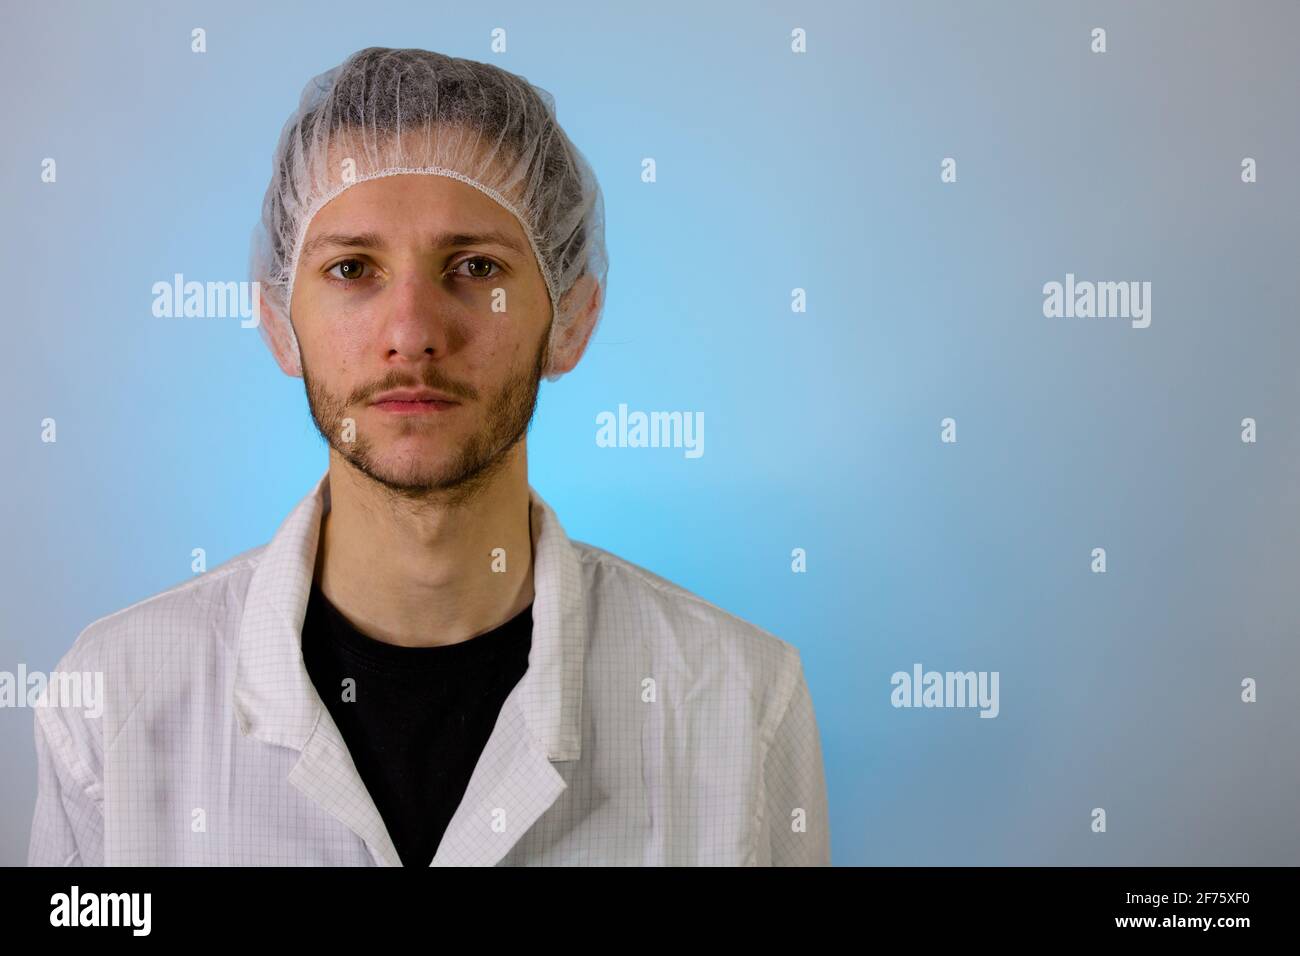 Un maschio adulto vestito in un camice bianco da laboratorio con una rete di capelli su. Pronto per lavorare in una camera bianca o in un laboratorio Foto Stock